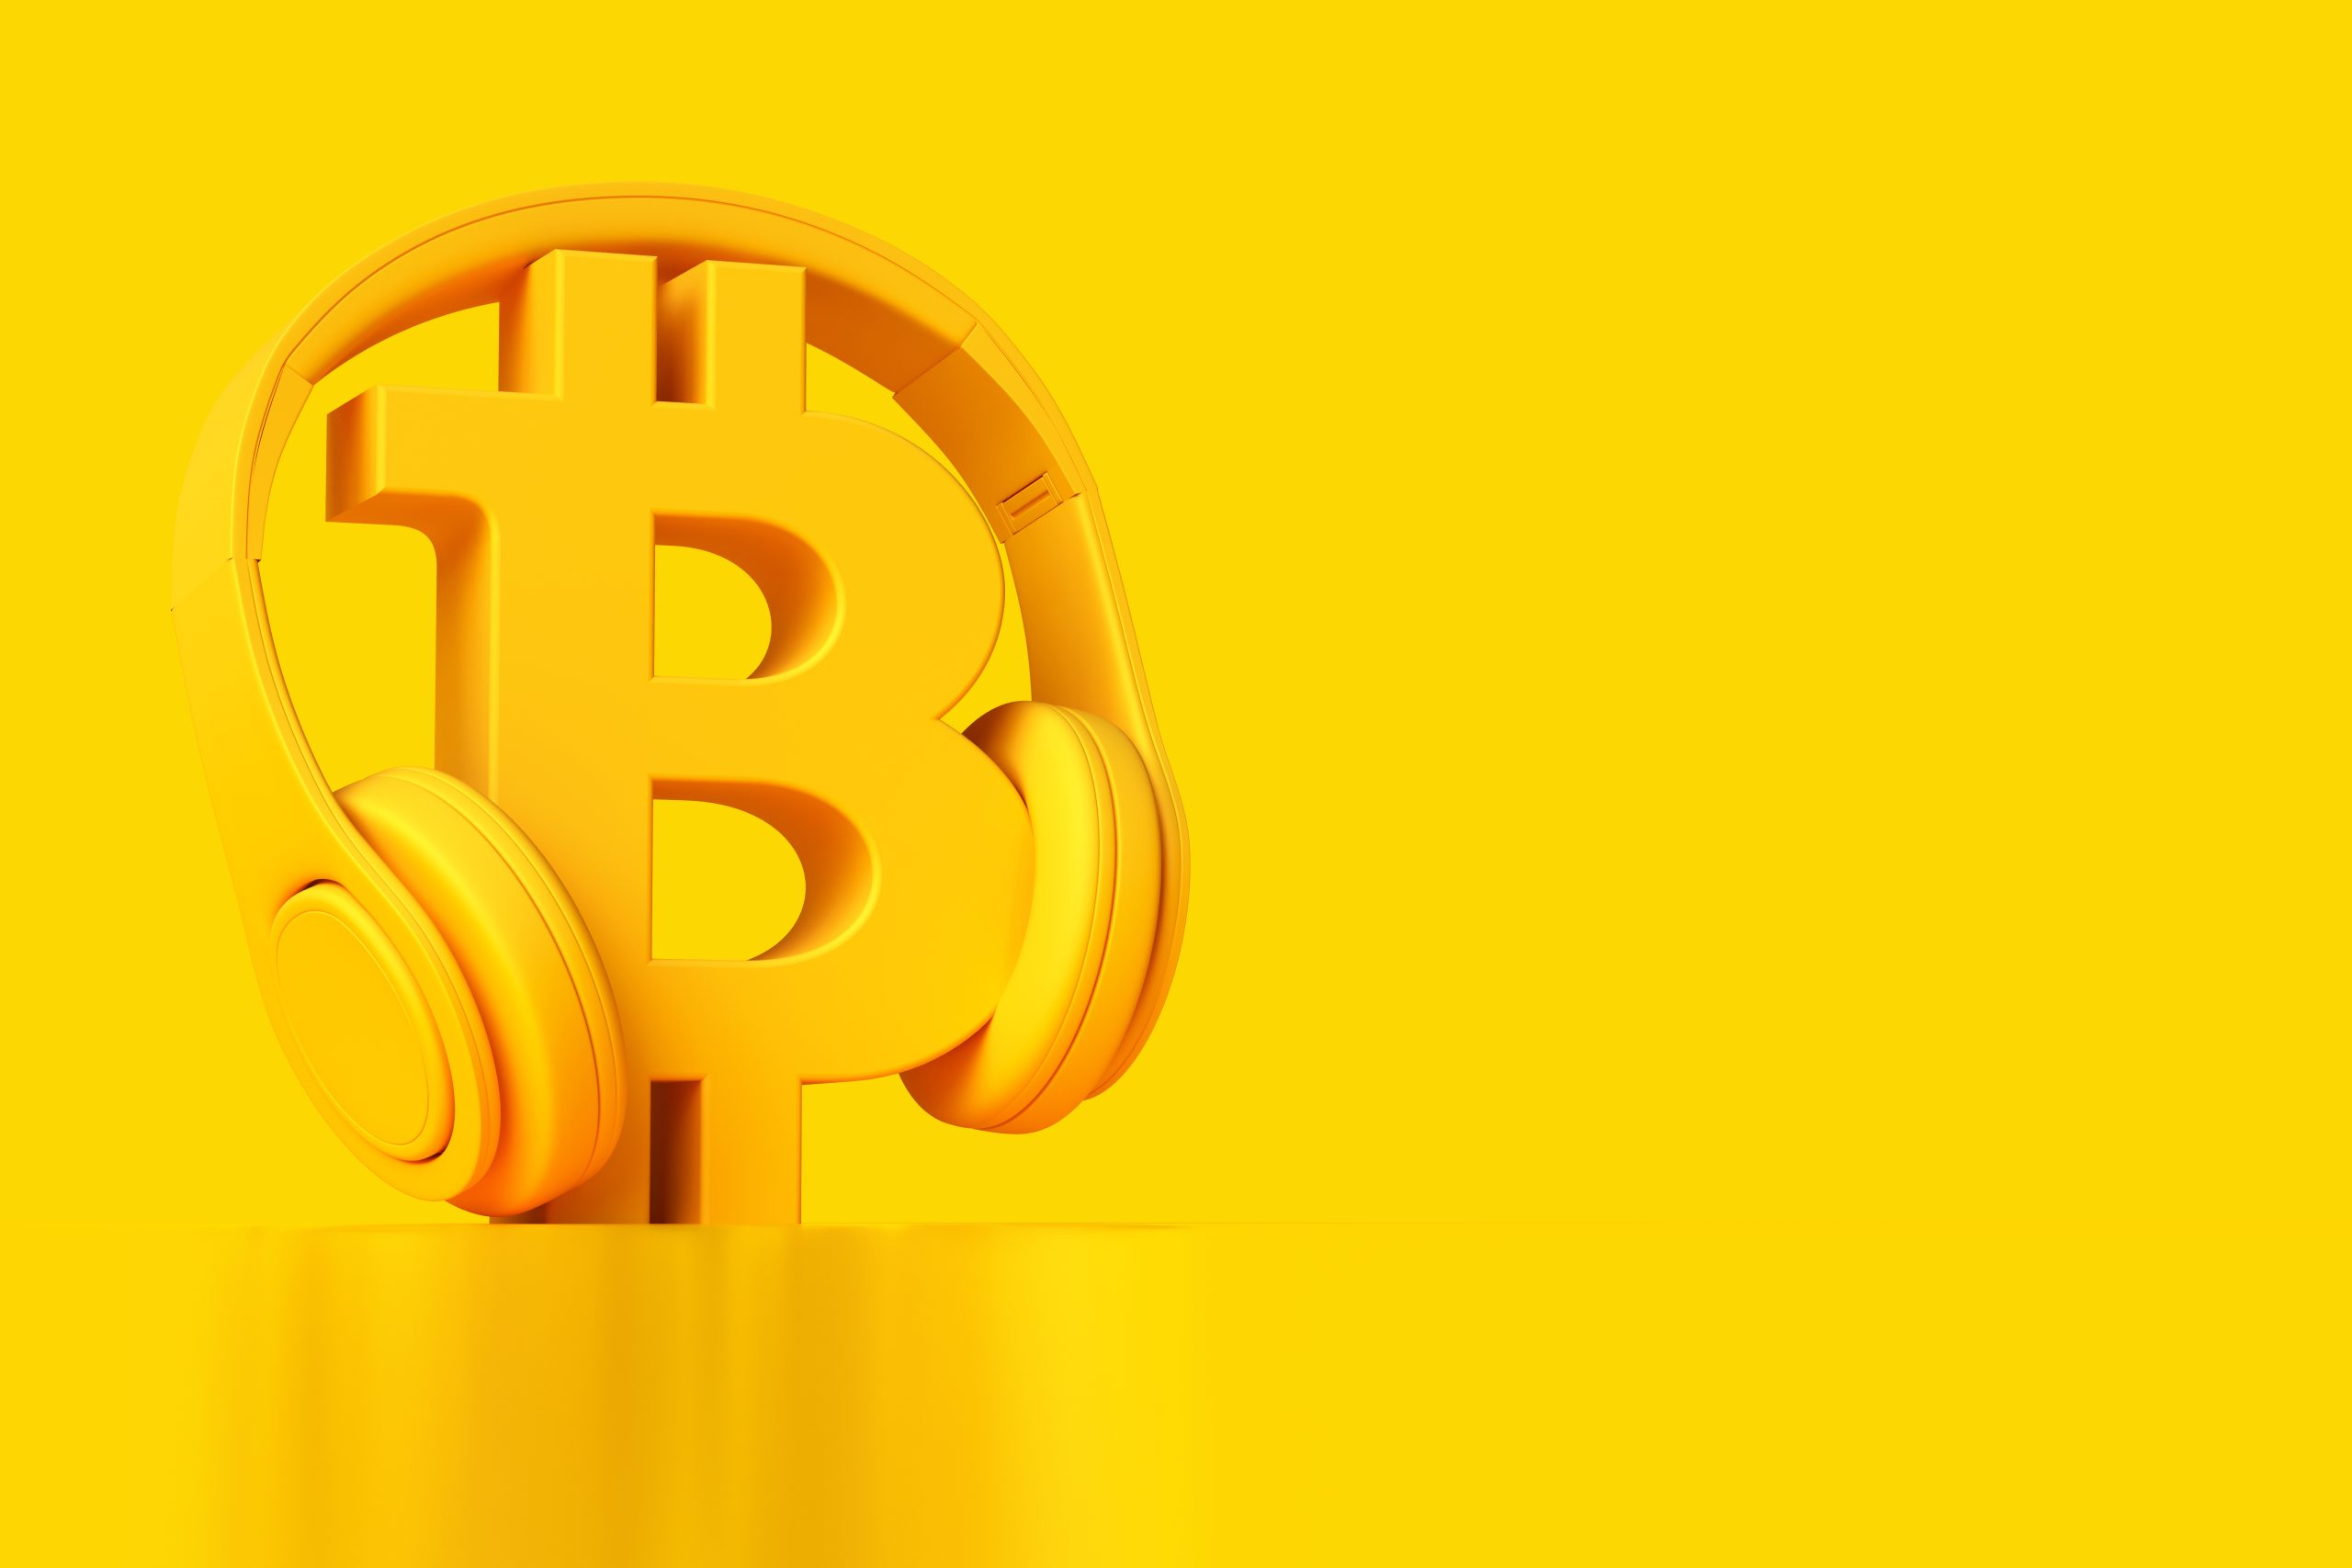 Bitcoin, Fiat & Rock´n´Roll - Der Krypto-& Finanz Podcast